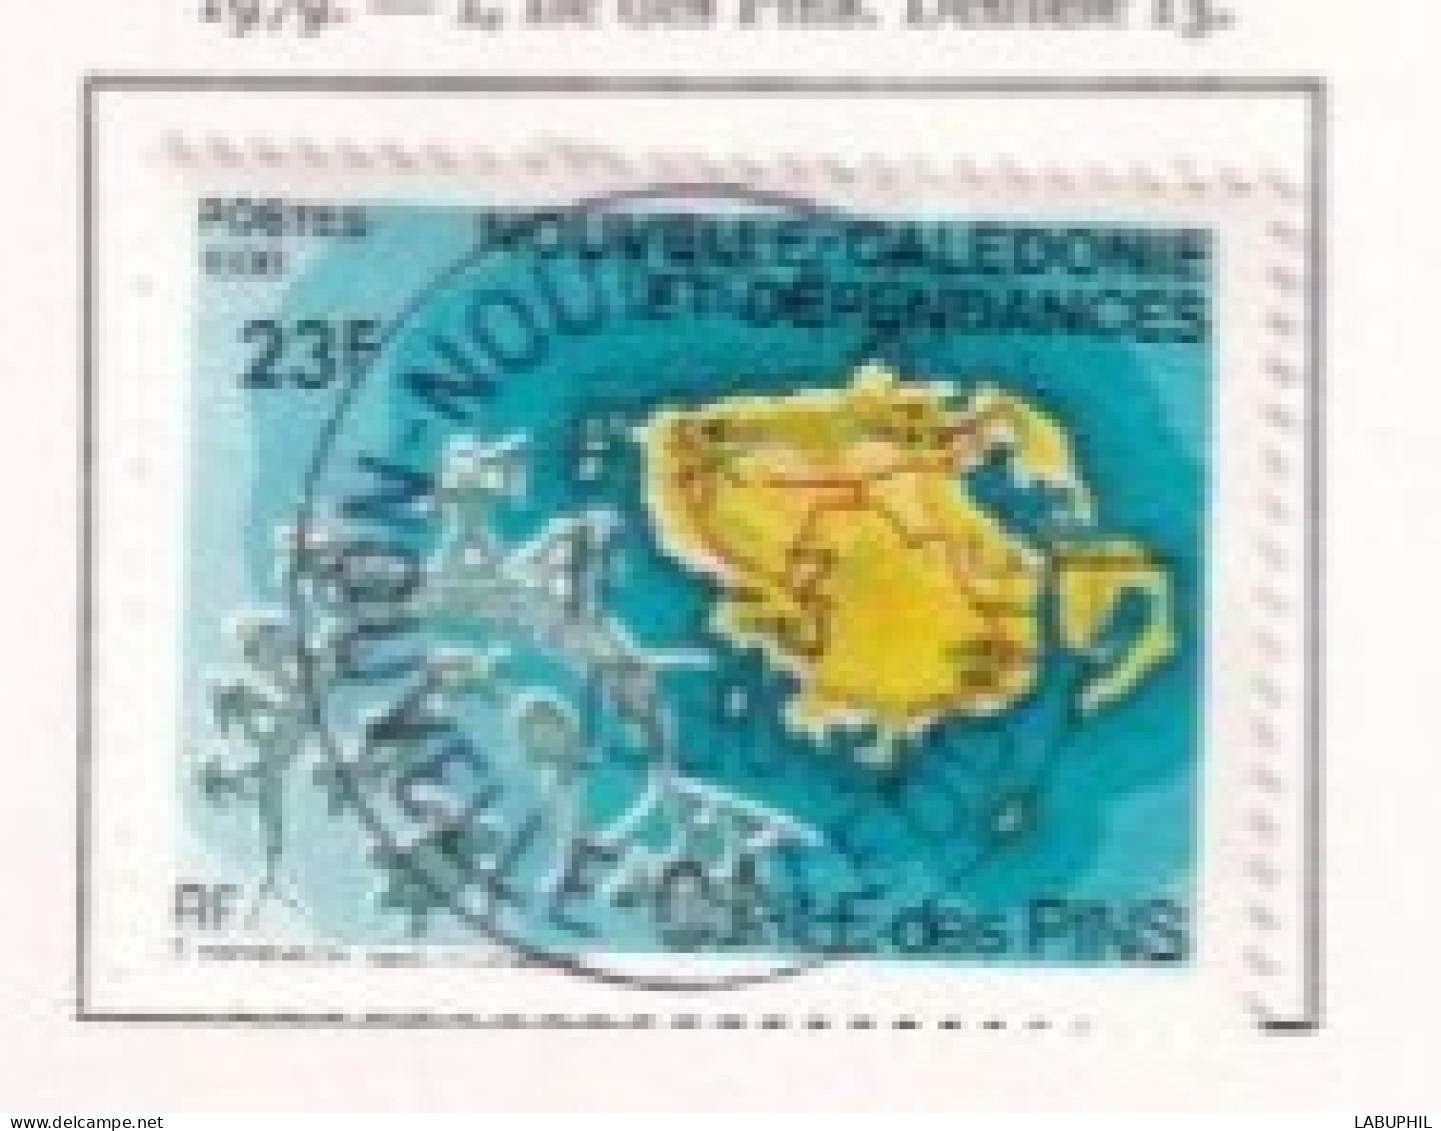 NOUVELLE CALEDONIE Dispersion D'une Collection Oblitéré Used 1979 - Oblitérés